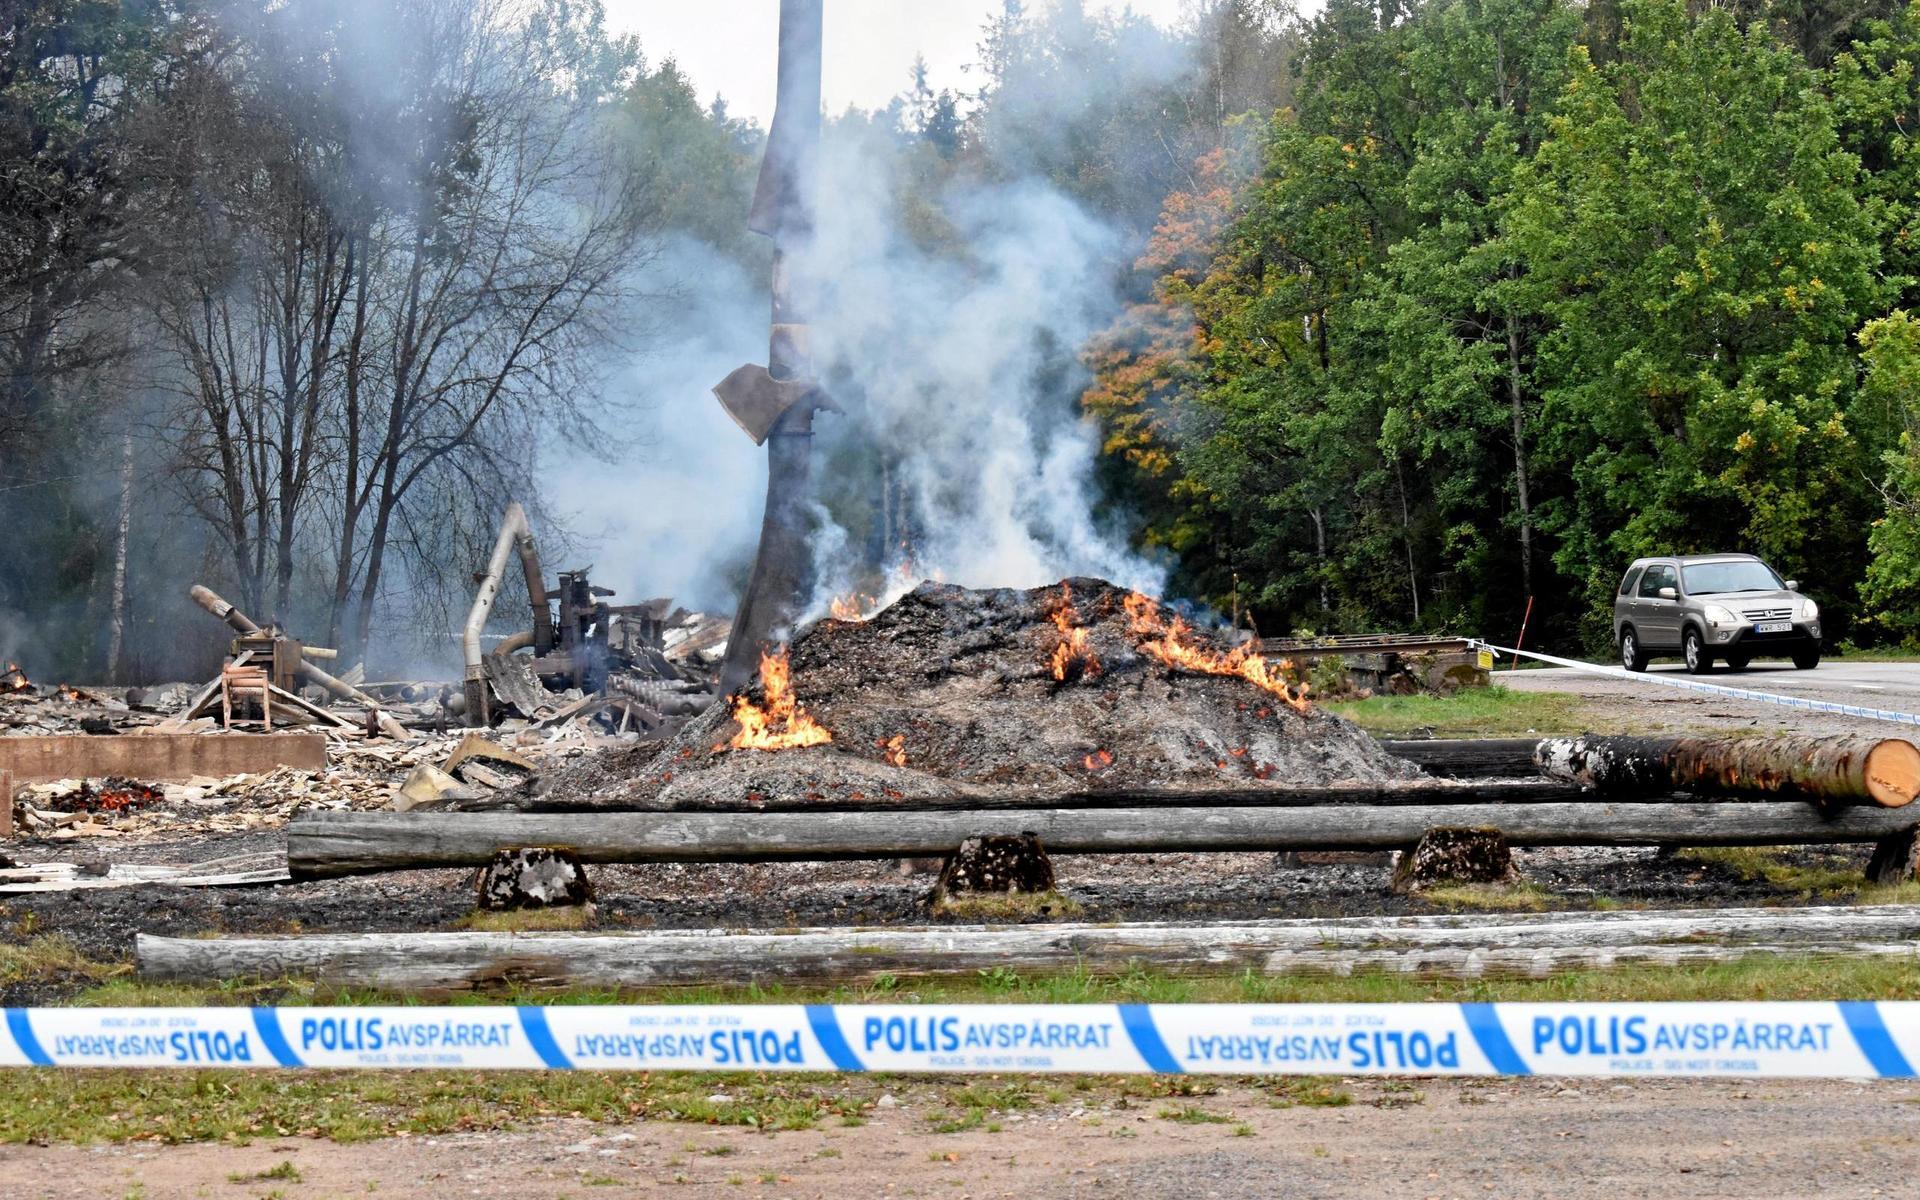 30 september. Sågverket i Håknaböke utanför Femsjö brann ned. Polisen spärrade av brandplatsen, men kunde sedan inte göra en teknisk utredning, på grund av asbest i brandresterna. 